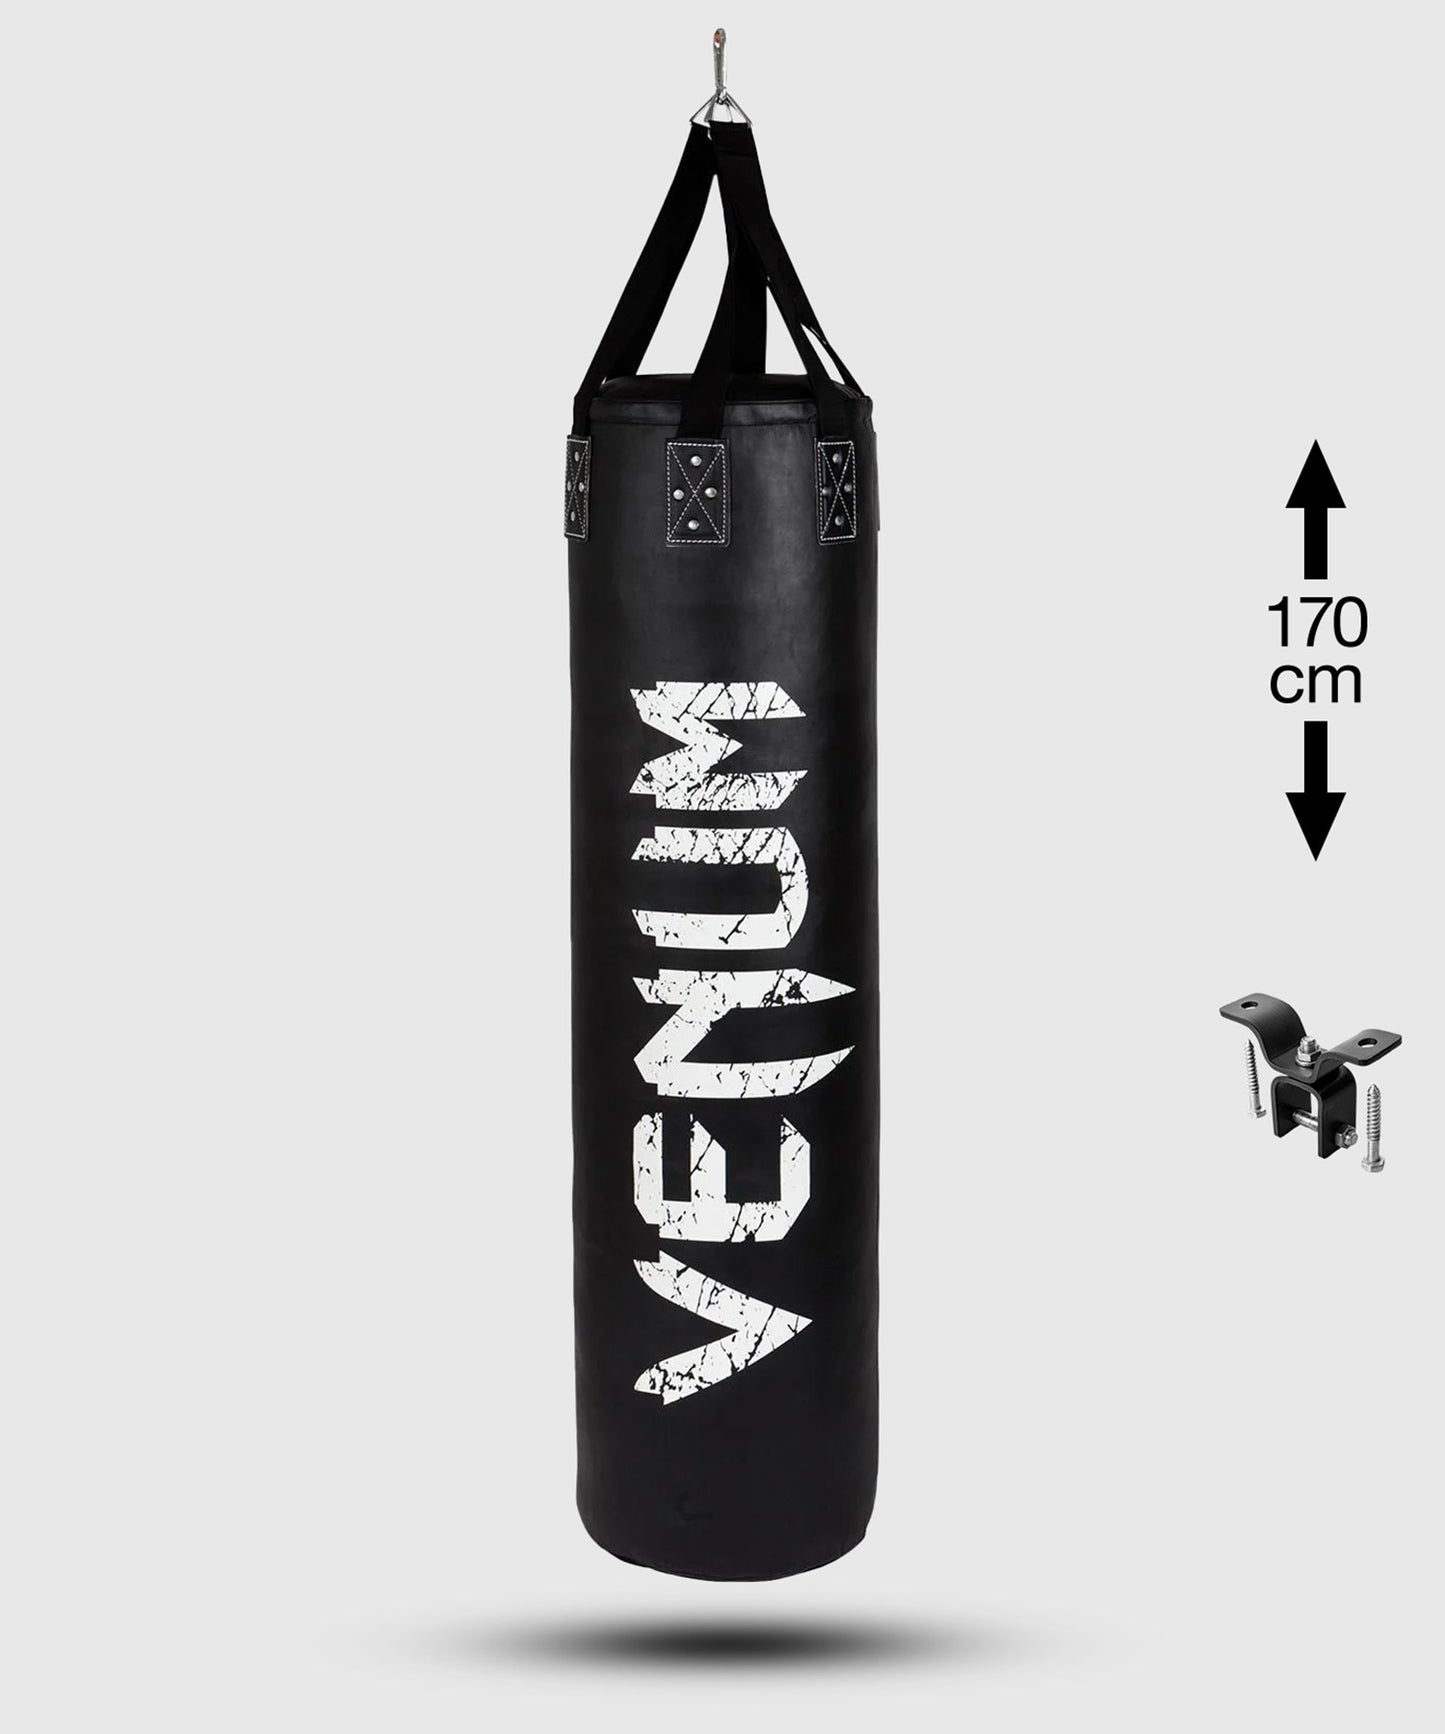 Venum Challenger bokszak (met plafondbevestiging) - Zwart/Wit - 170 cm - gevuld